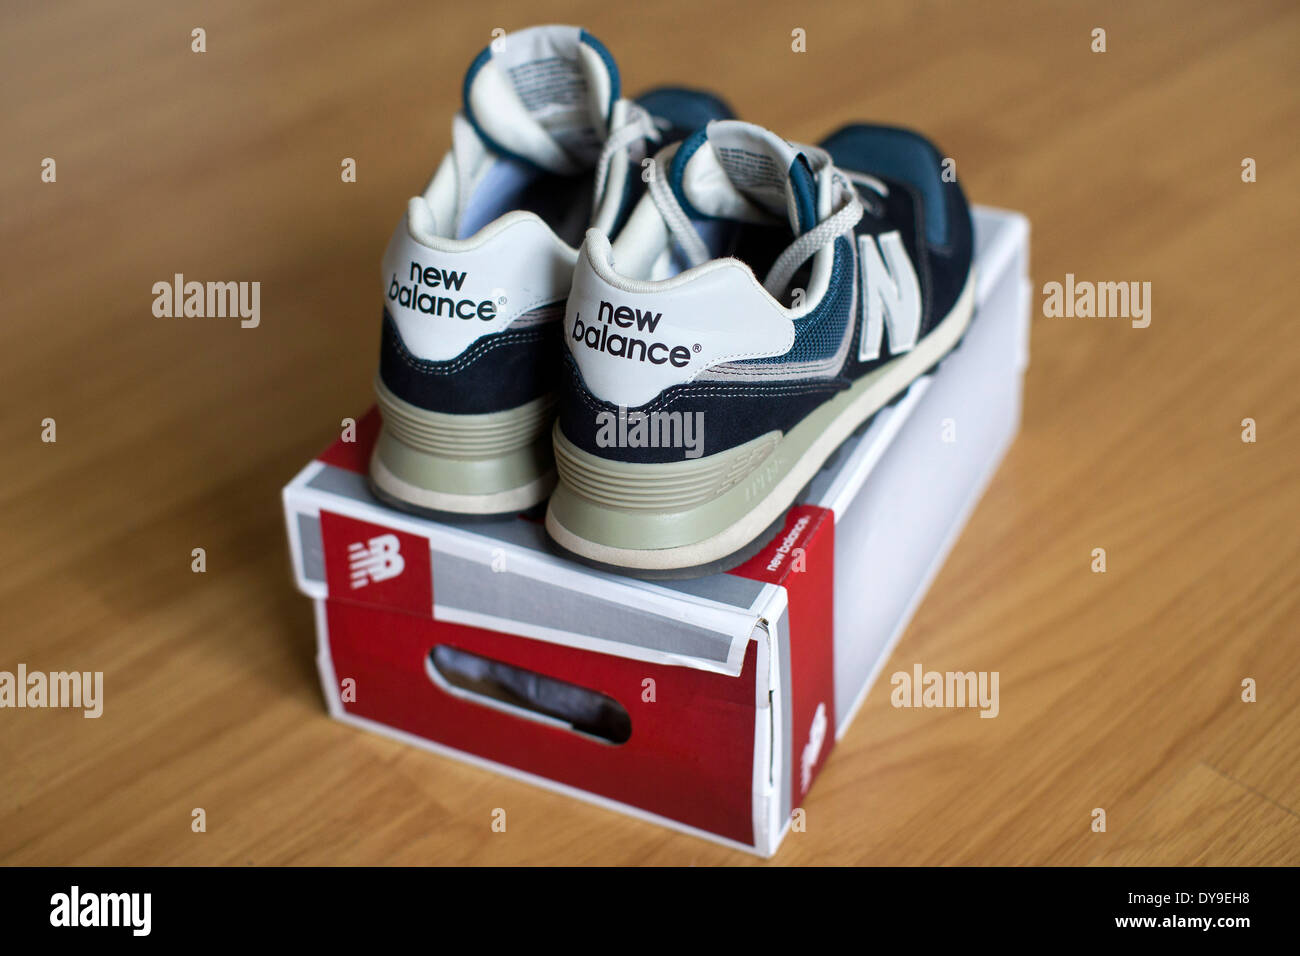 Regno Unito, Londra : un'immagine mostra un paio di nuove scarpe di equilibrio su una scatola di scarpe. Foto Stock